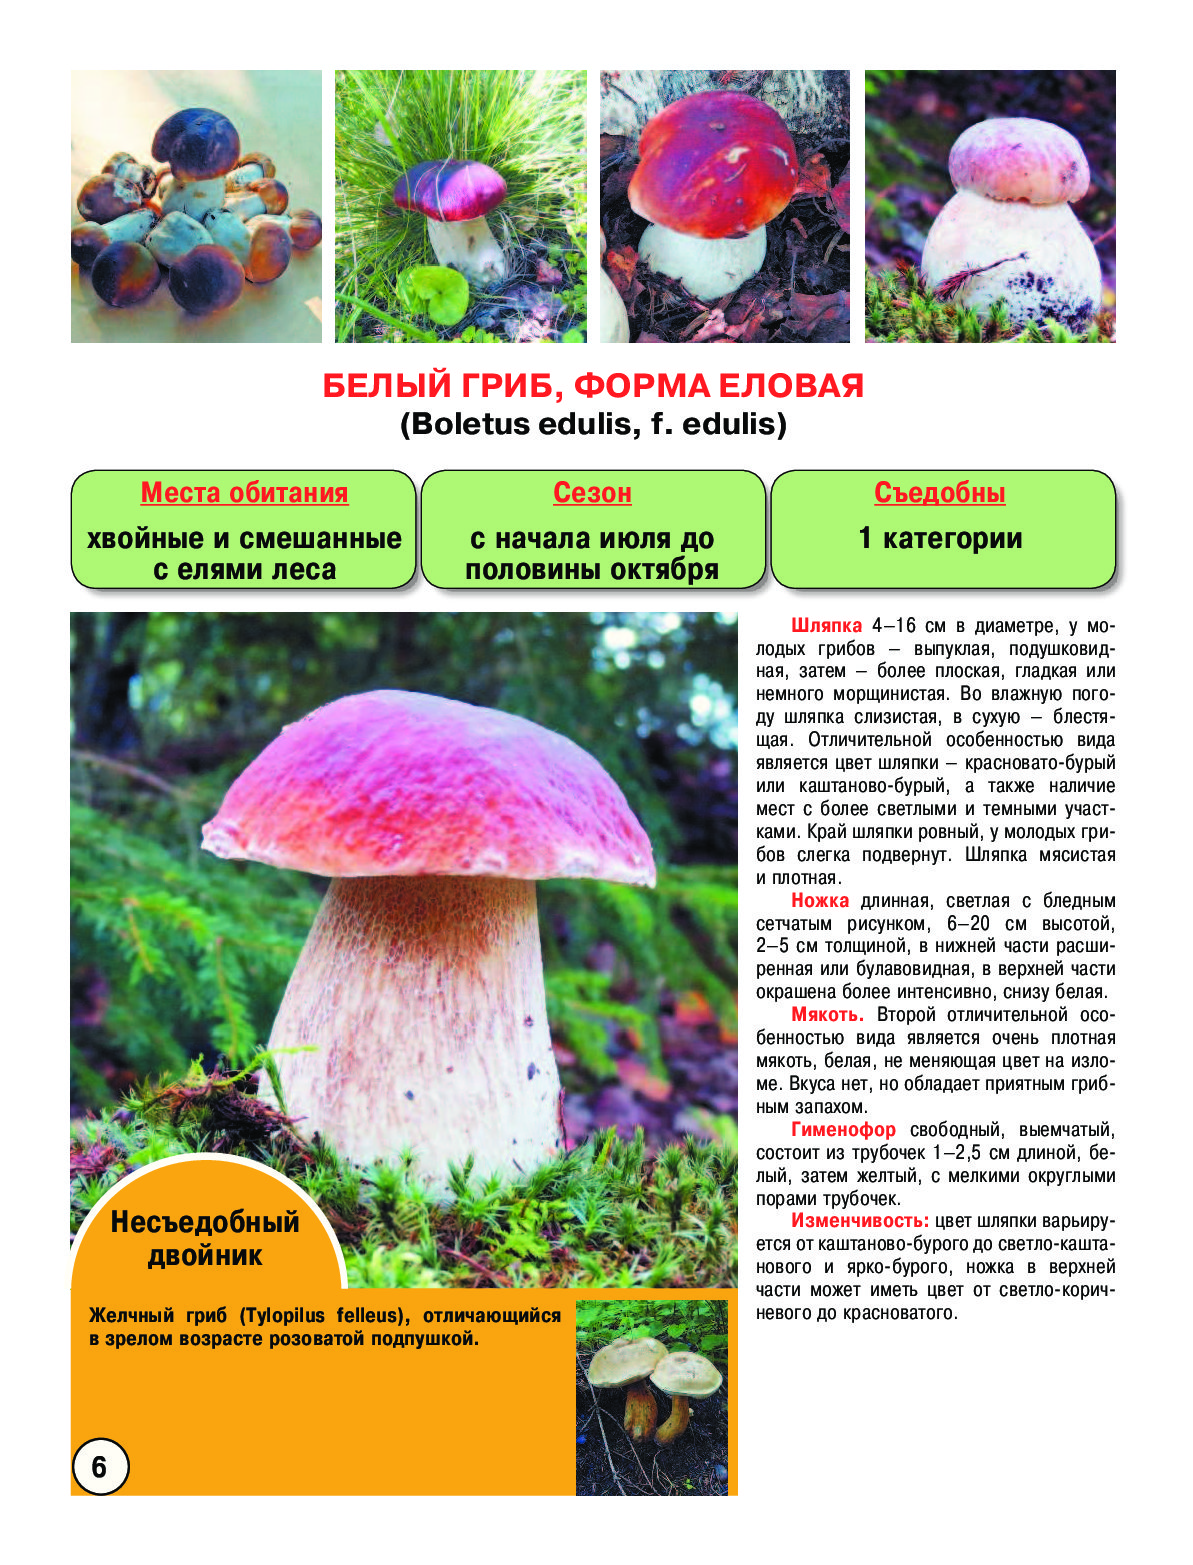 Фото и описание съедобных грибов